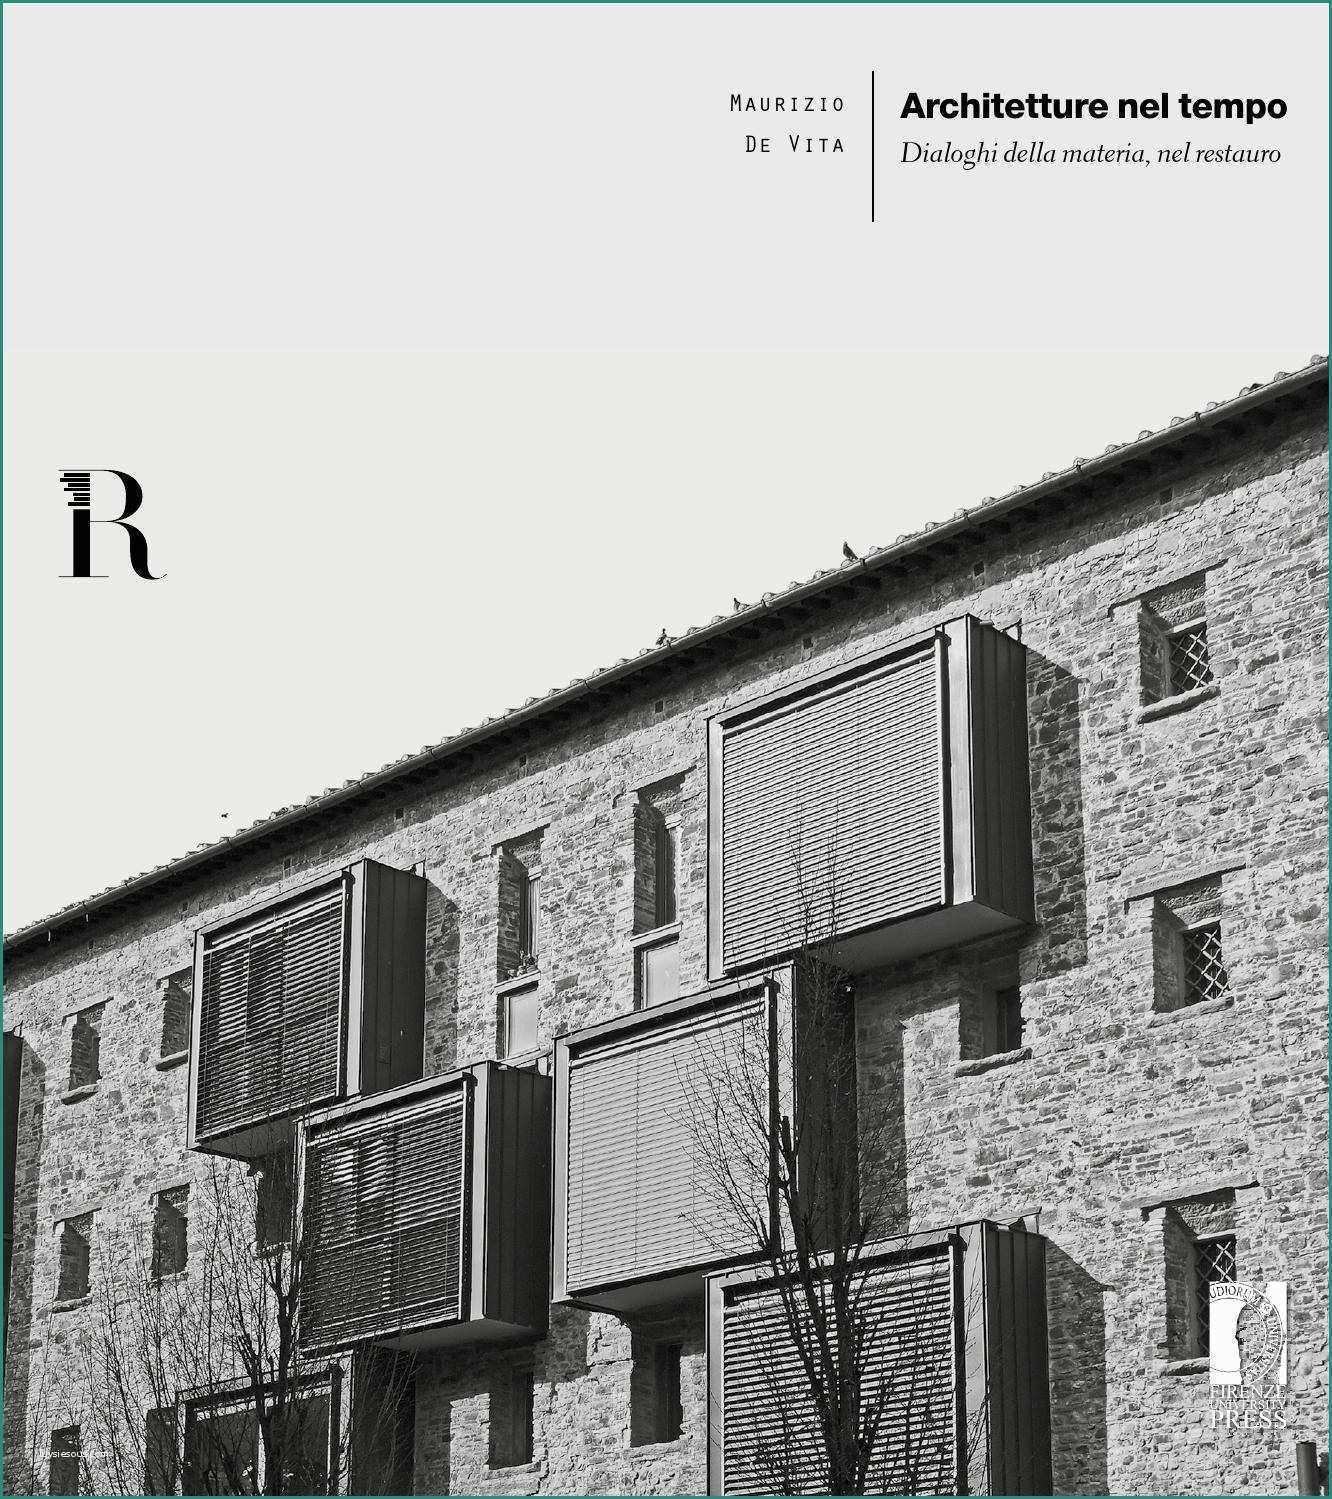 Ringhiere In Legno Per Balconi Esterni E Architetture Nel Tempo Maurizio De Vita by Dida issuu